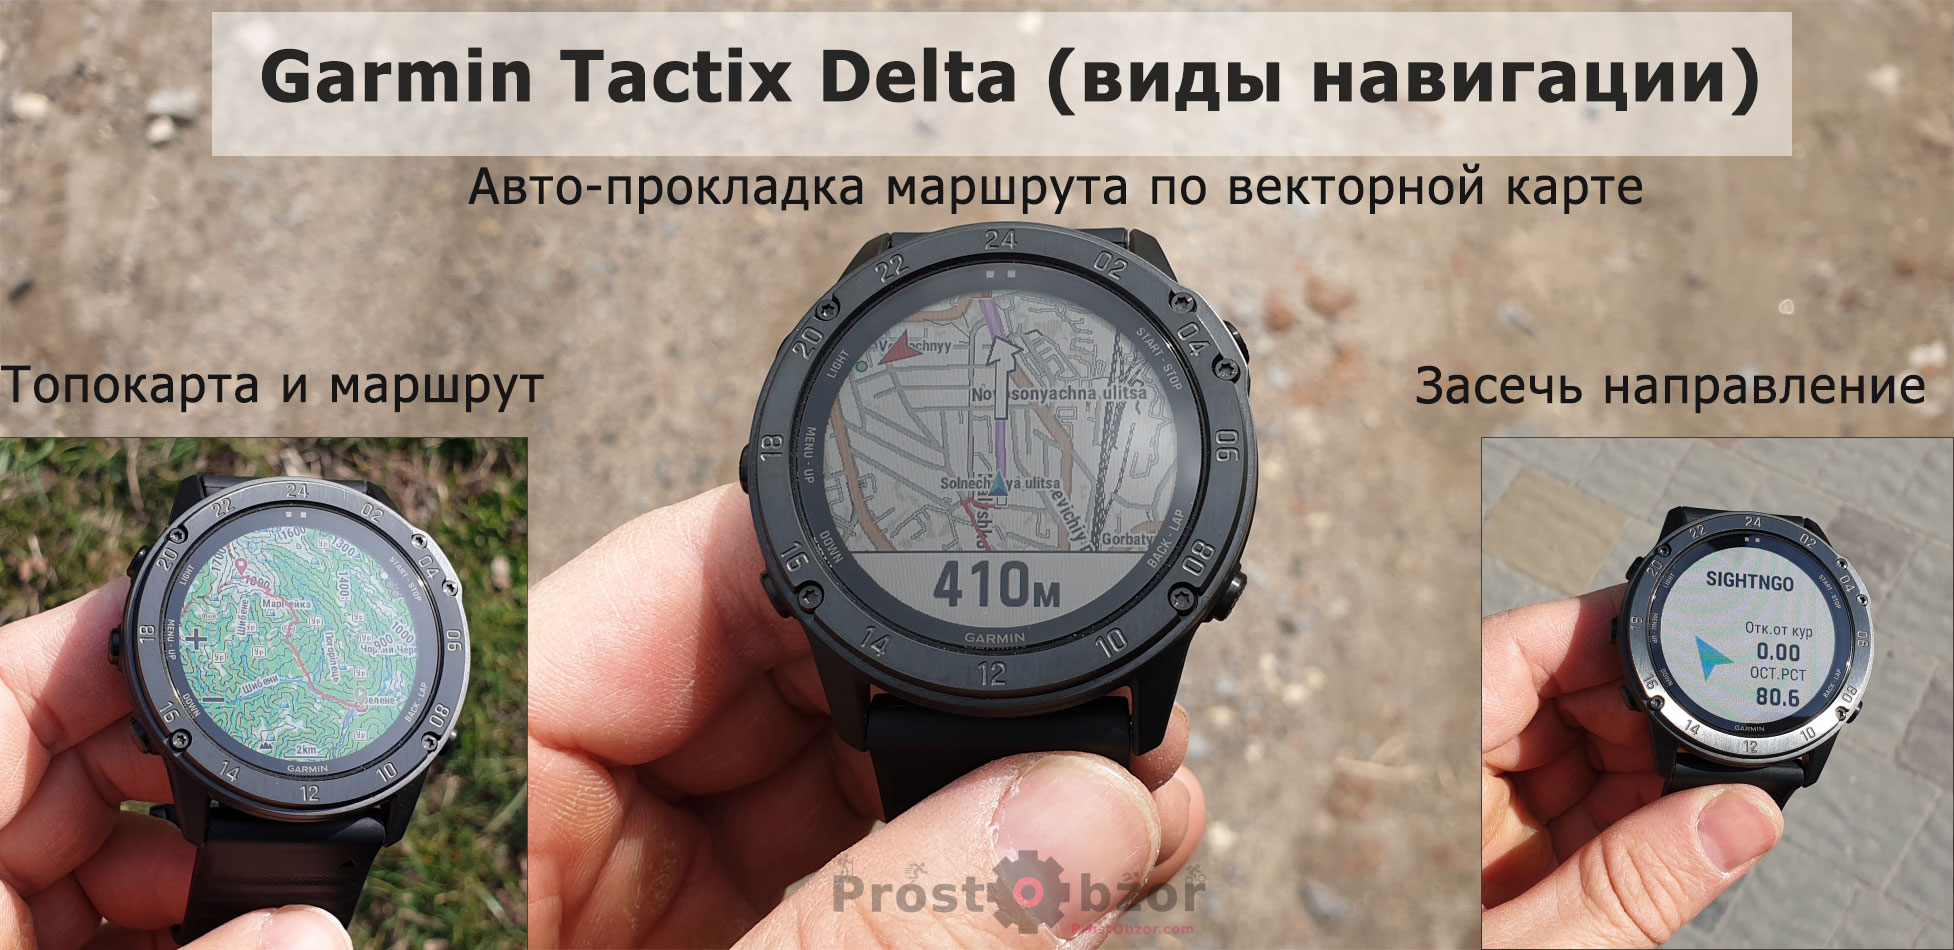 Часы Garmin Tactix Delta - детальный обзор, тесты, сравнение моделей